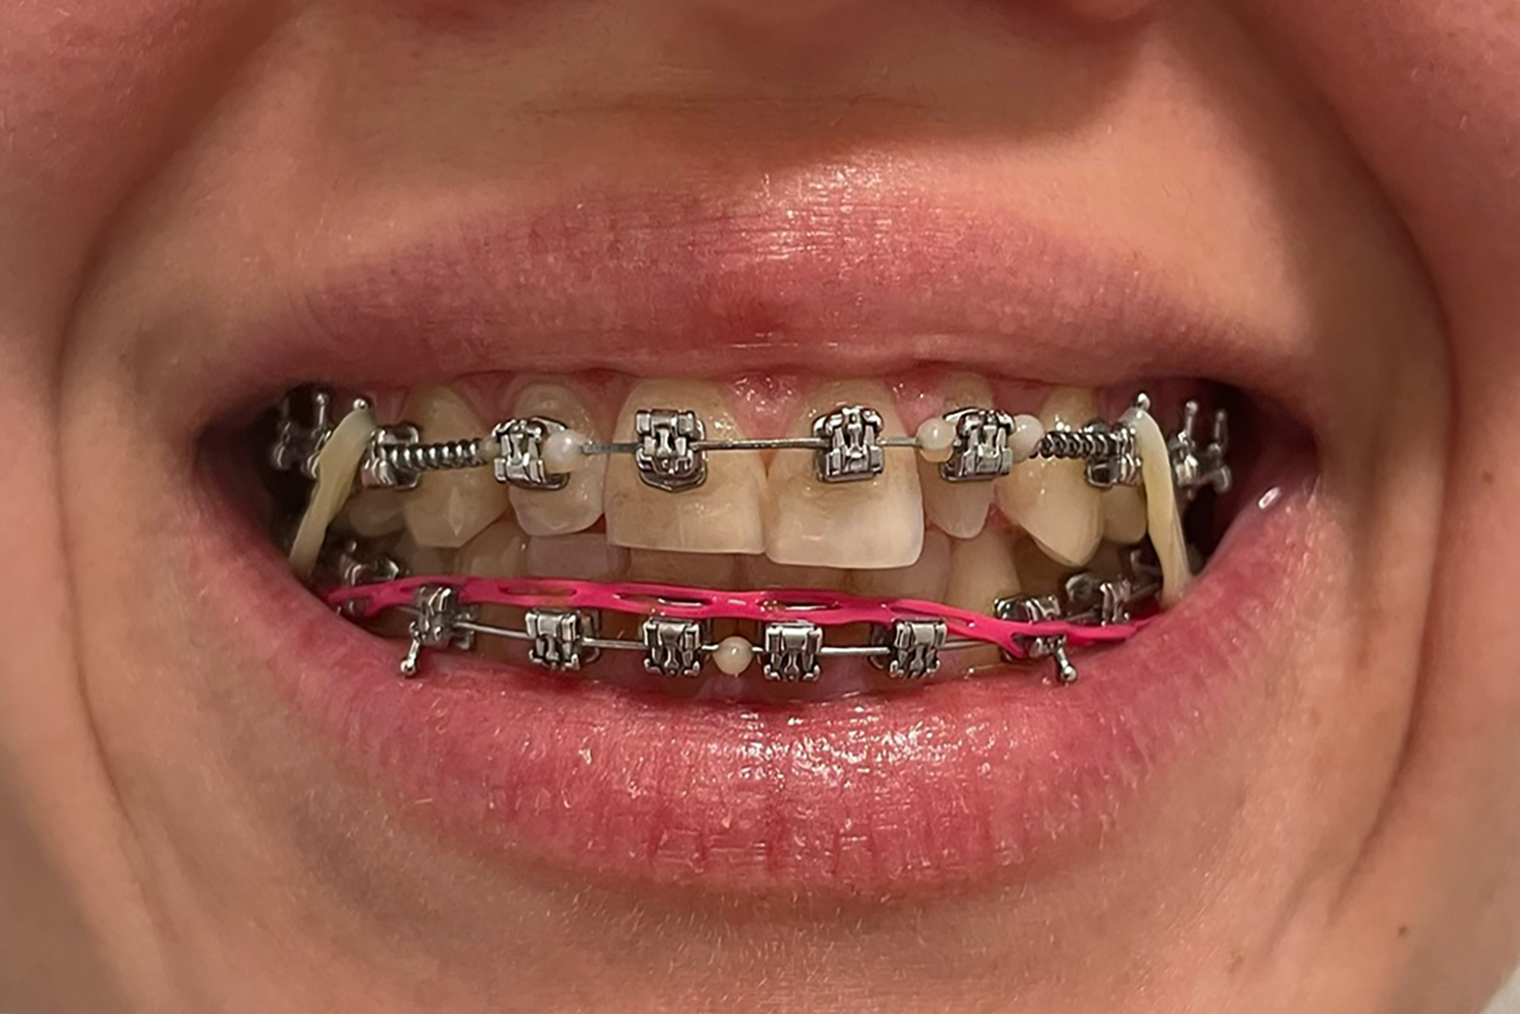 Последний снимок. На зубах брекеты с пружинами, эластики и ортодонтическая цепочка